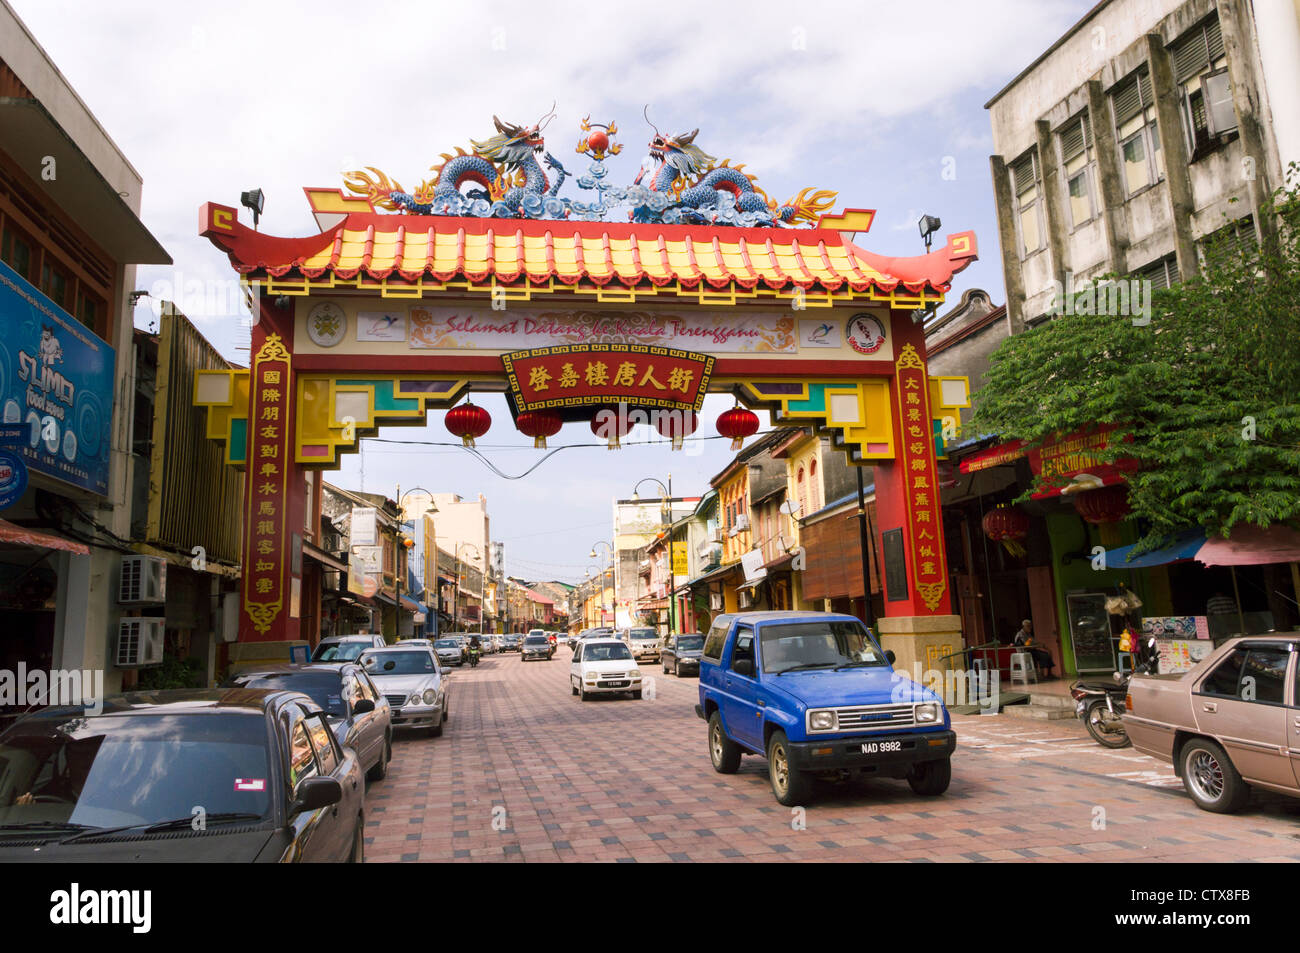 L'entrée de Chinatown, arch terengganu Malaisie Banque D'Images